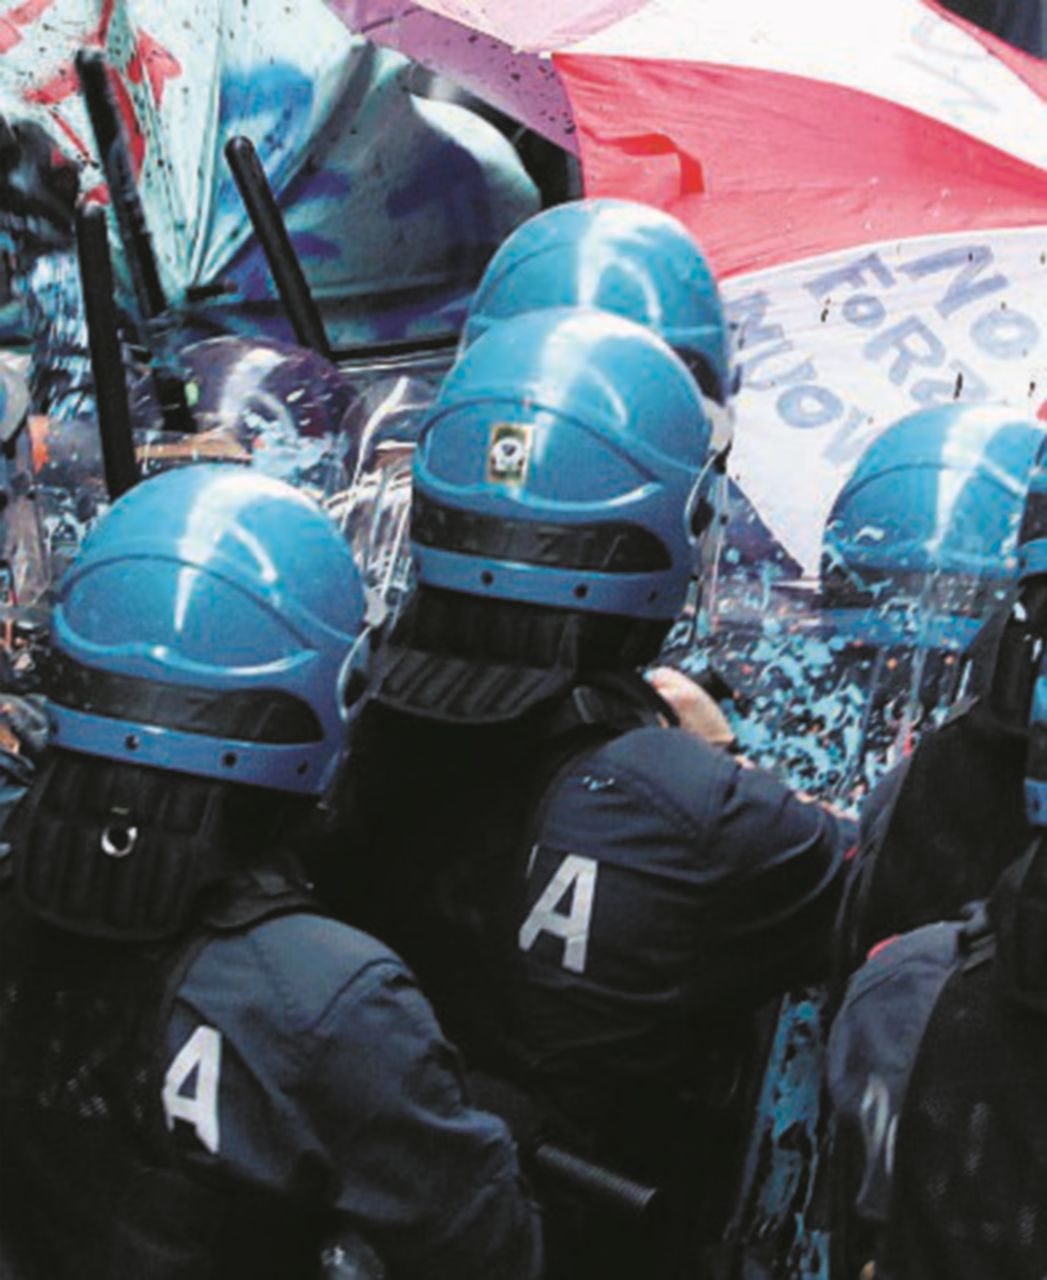 “Quante teste dovranno essere spaccate prima di vedere i numeri identificativi sui caschi dei poliziotti?”: l’appello dell’attivista di Bologna